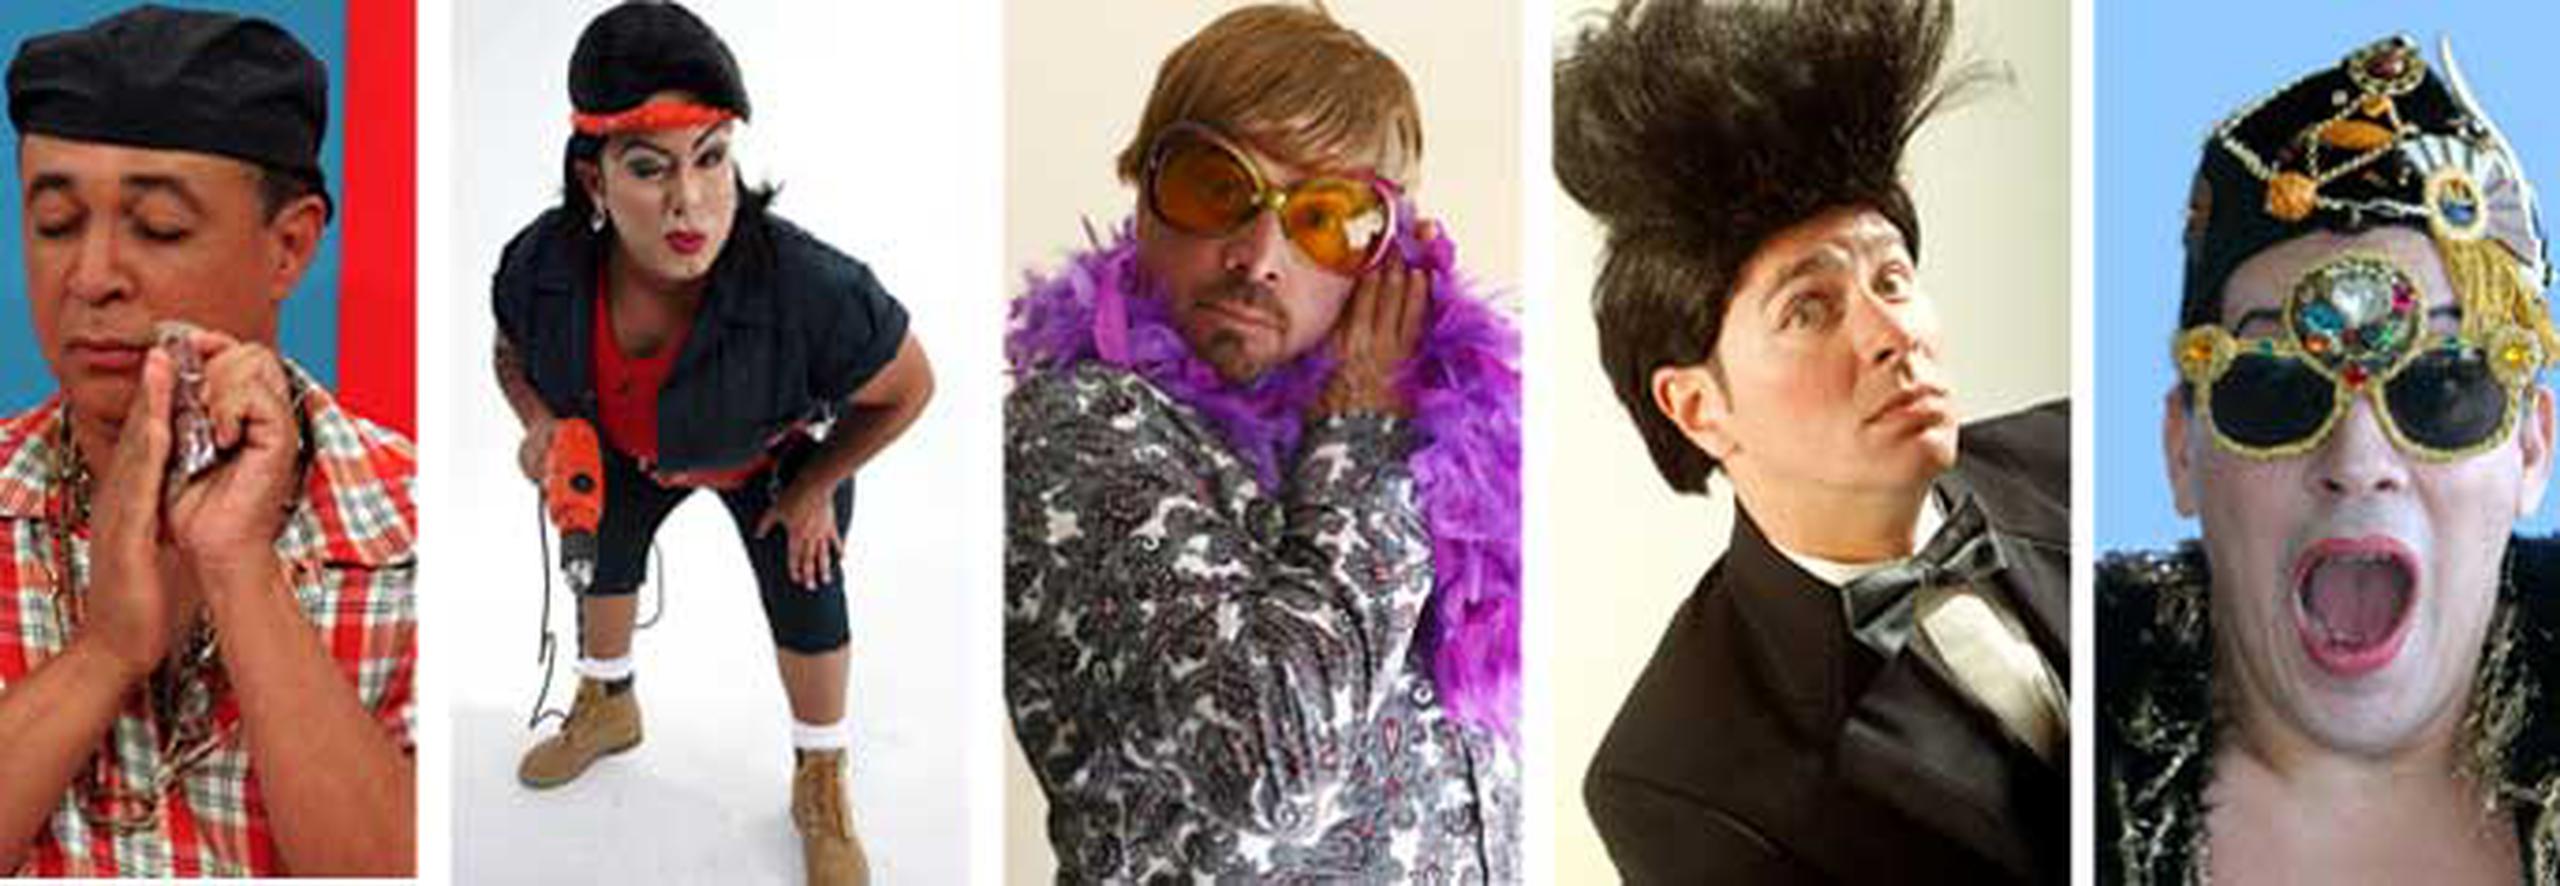 “Vitín Alicea”, “La Buchi”, “Fausto Puñetier”, “Florencio Melon Pujals” y Guille son algunos de los personajes gays de la televisión puertorriqueña.   (Archivo)